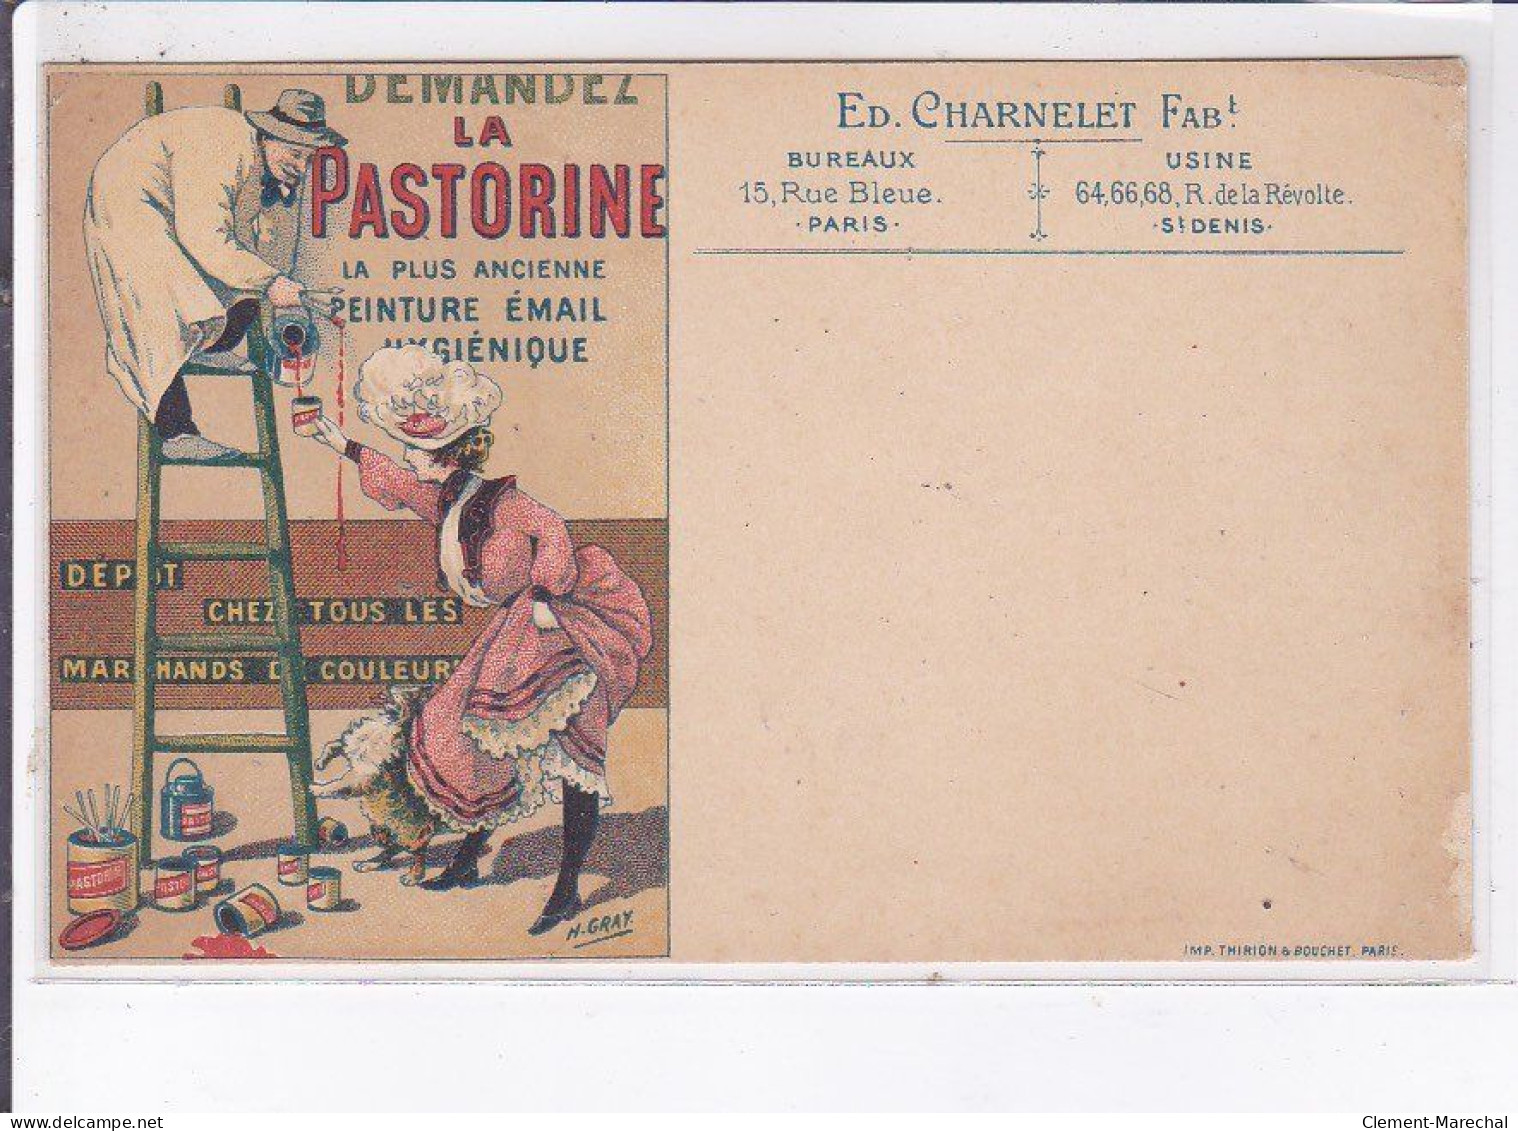 PUBLICITE : Demandez La Pastorine (peinture Email) Illustrée Par Gray - état - Reclame